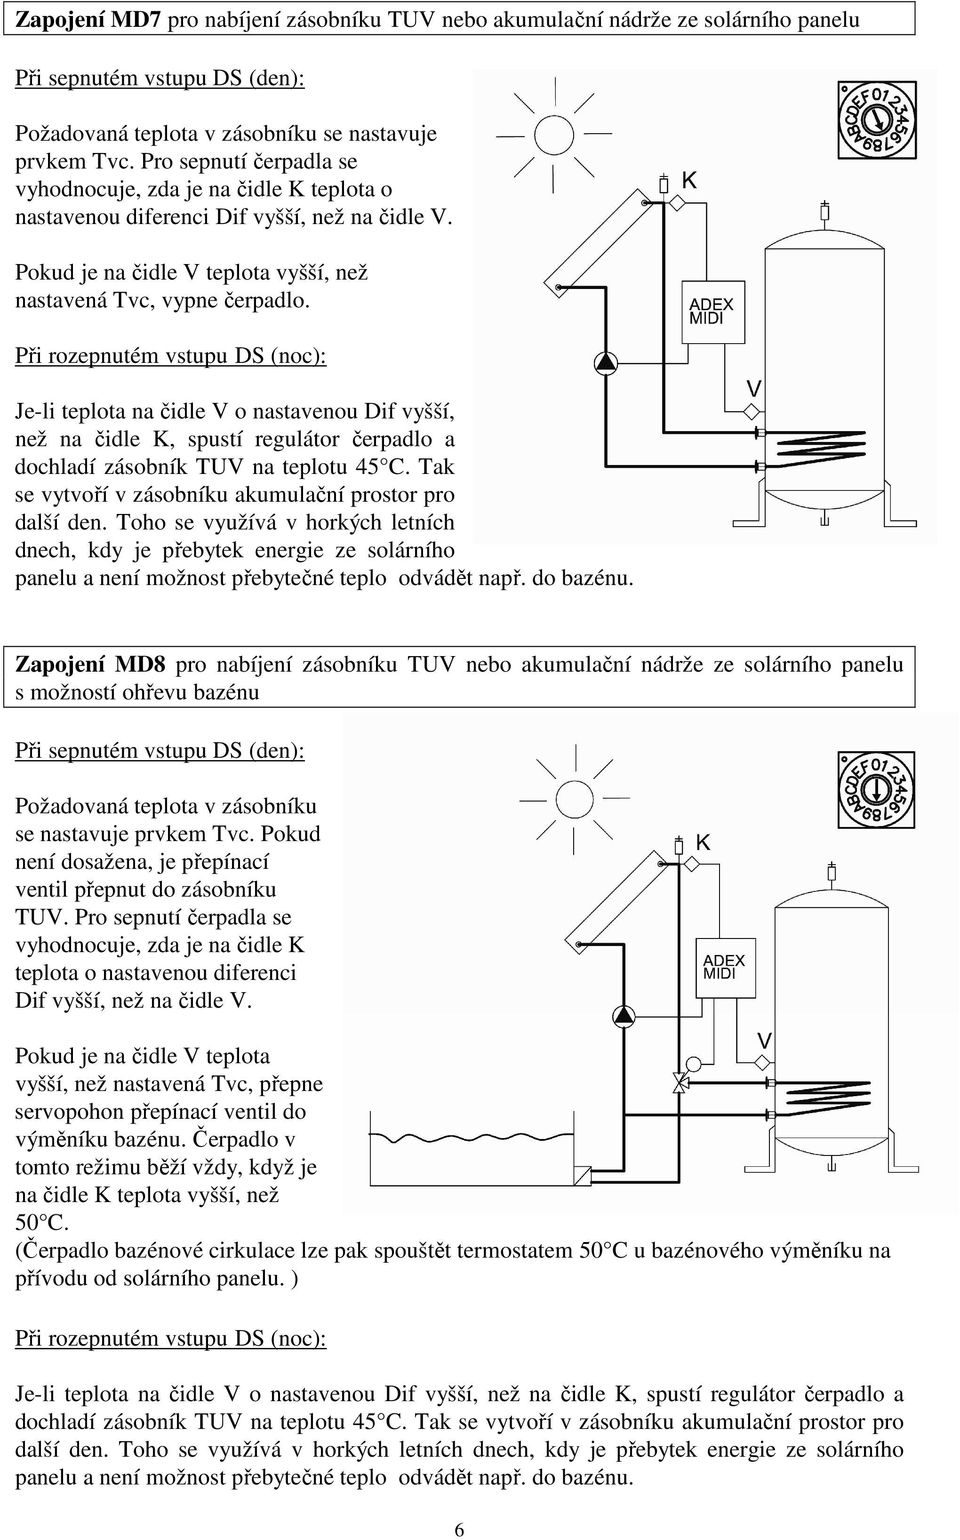 Při rozepnutém vstupu DS (noc): Je-li teplota na čidle V o nastavenou Dif vyšší, než na čidle K, spustí regulátor čerpadlo a dochladí zásobník TUV na teplotu 45 C.